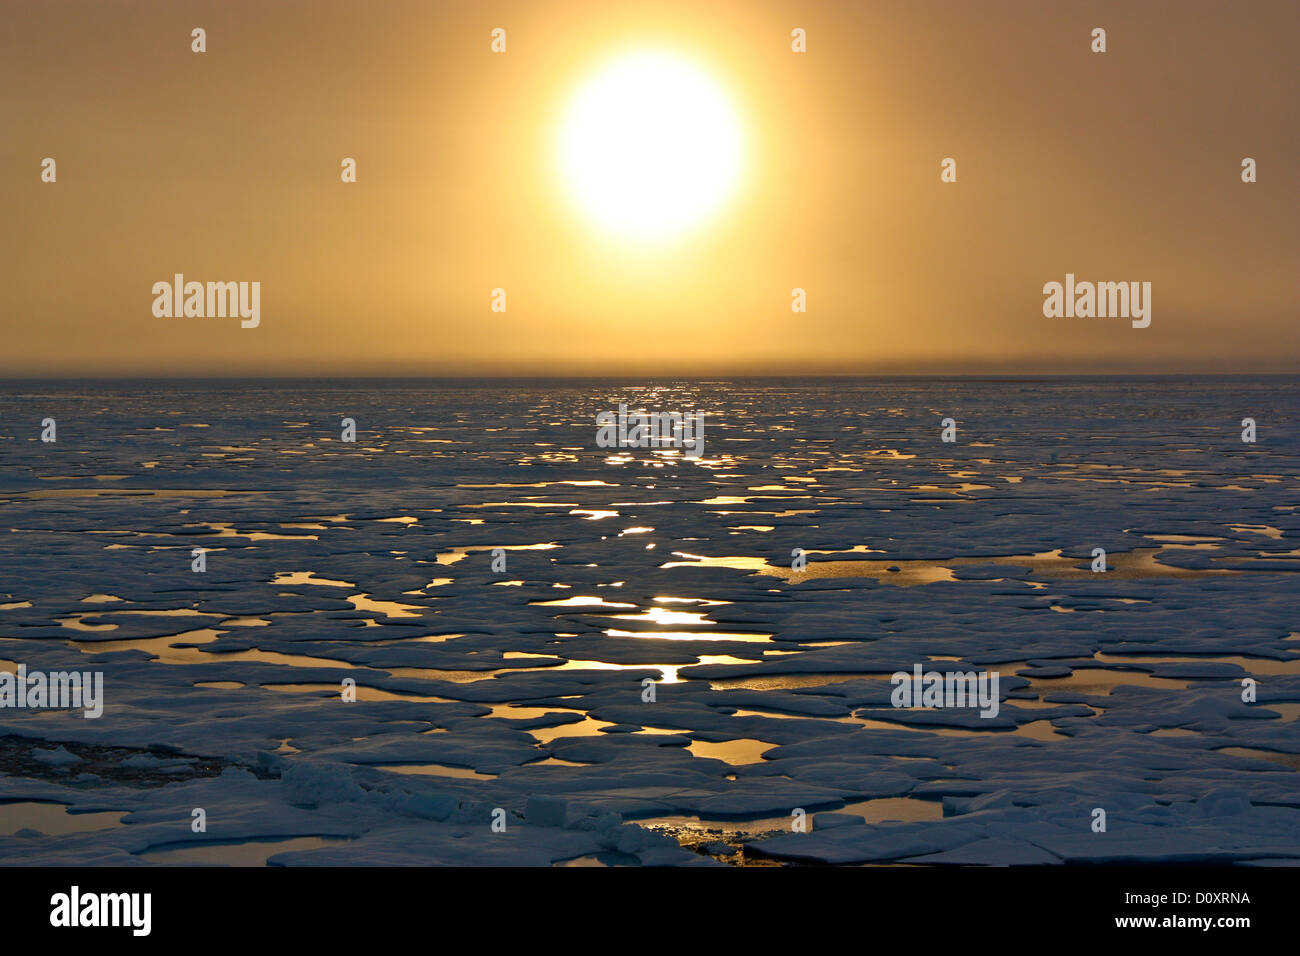 Coucher de soleil sur l'océan Arctique vu de l'US Coast Guard Cutter Healy stationné dans la banquise au cours de la recherche sur l'évolution des conditions dans l'Arctique le 6 juillet 2011 dans la mer de Chukchi. Banque D'Images